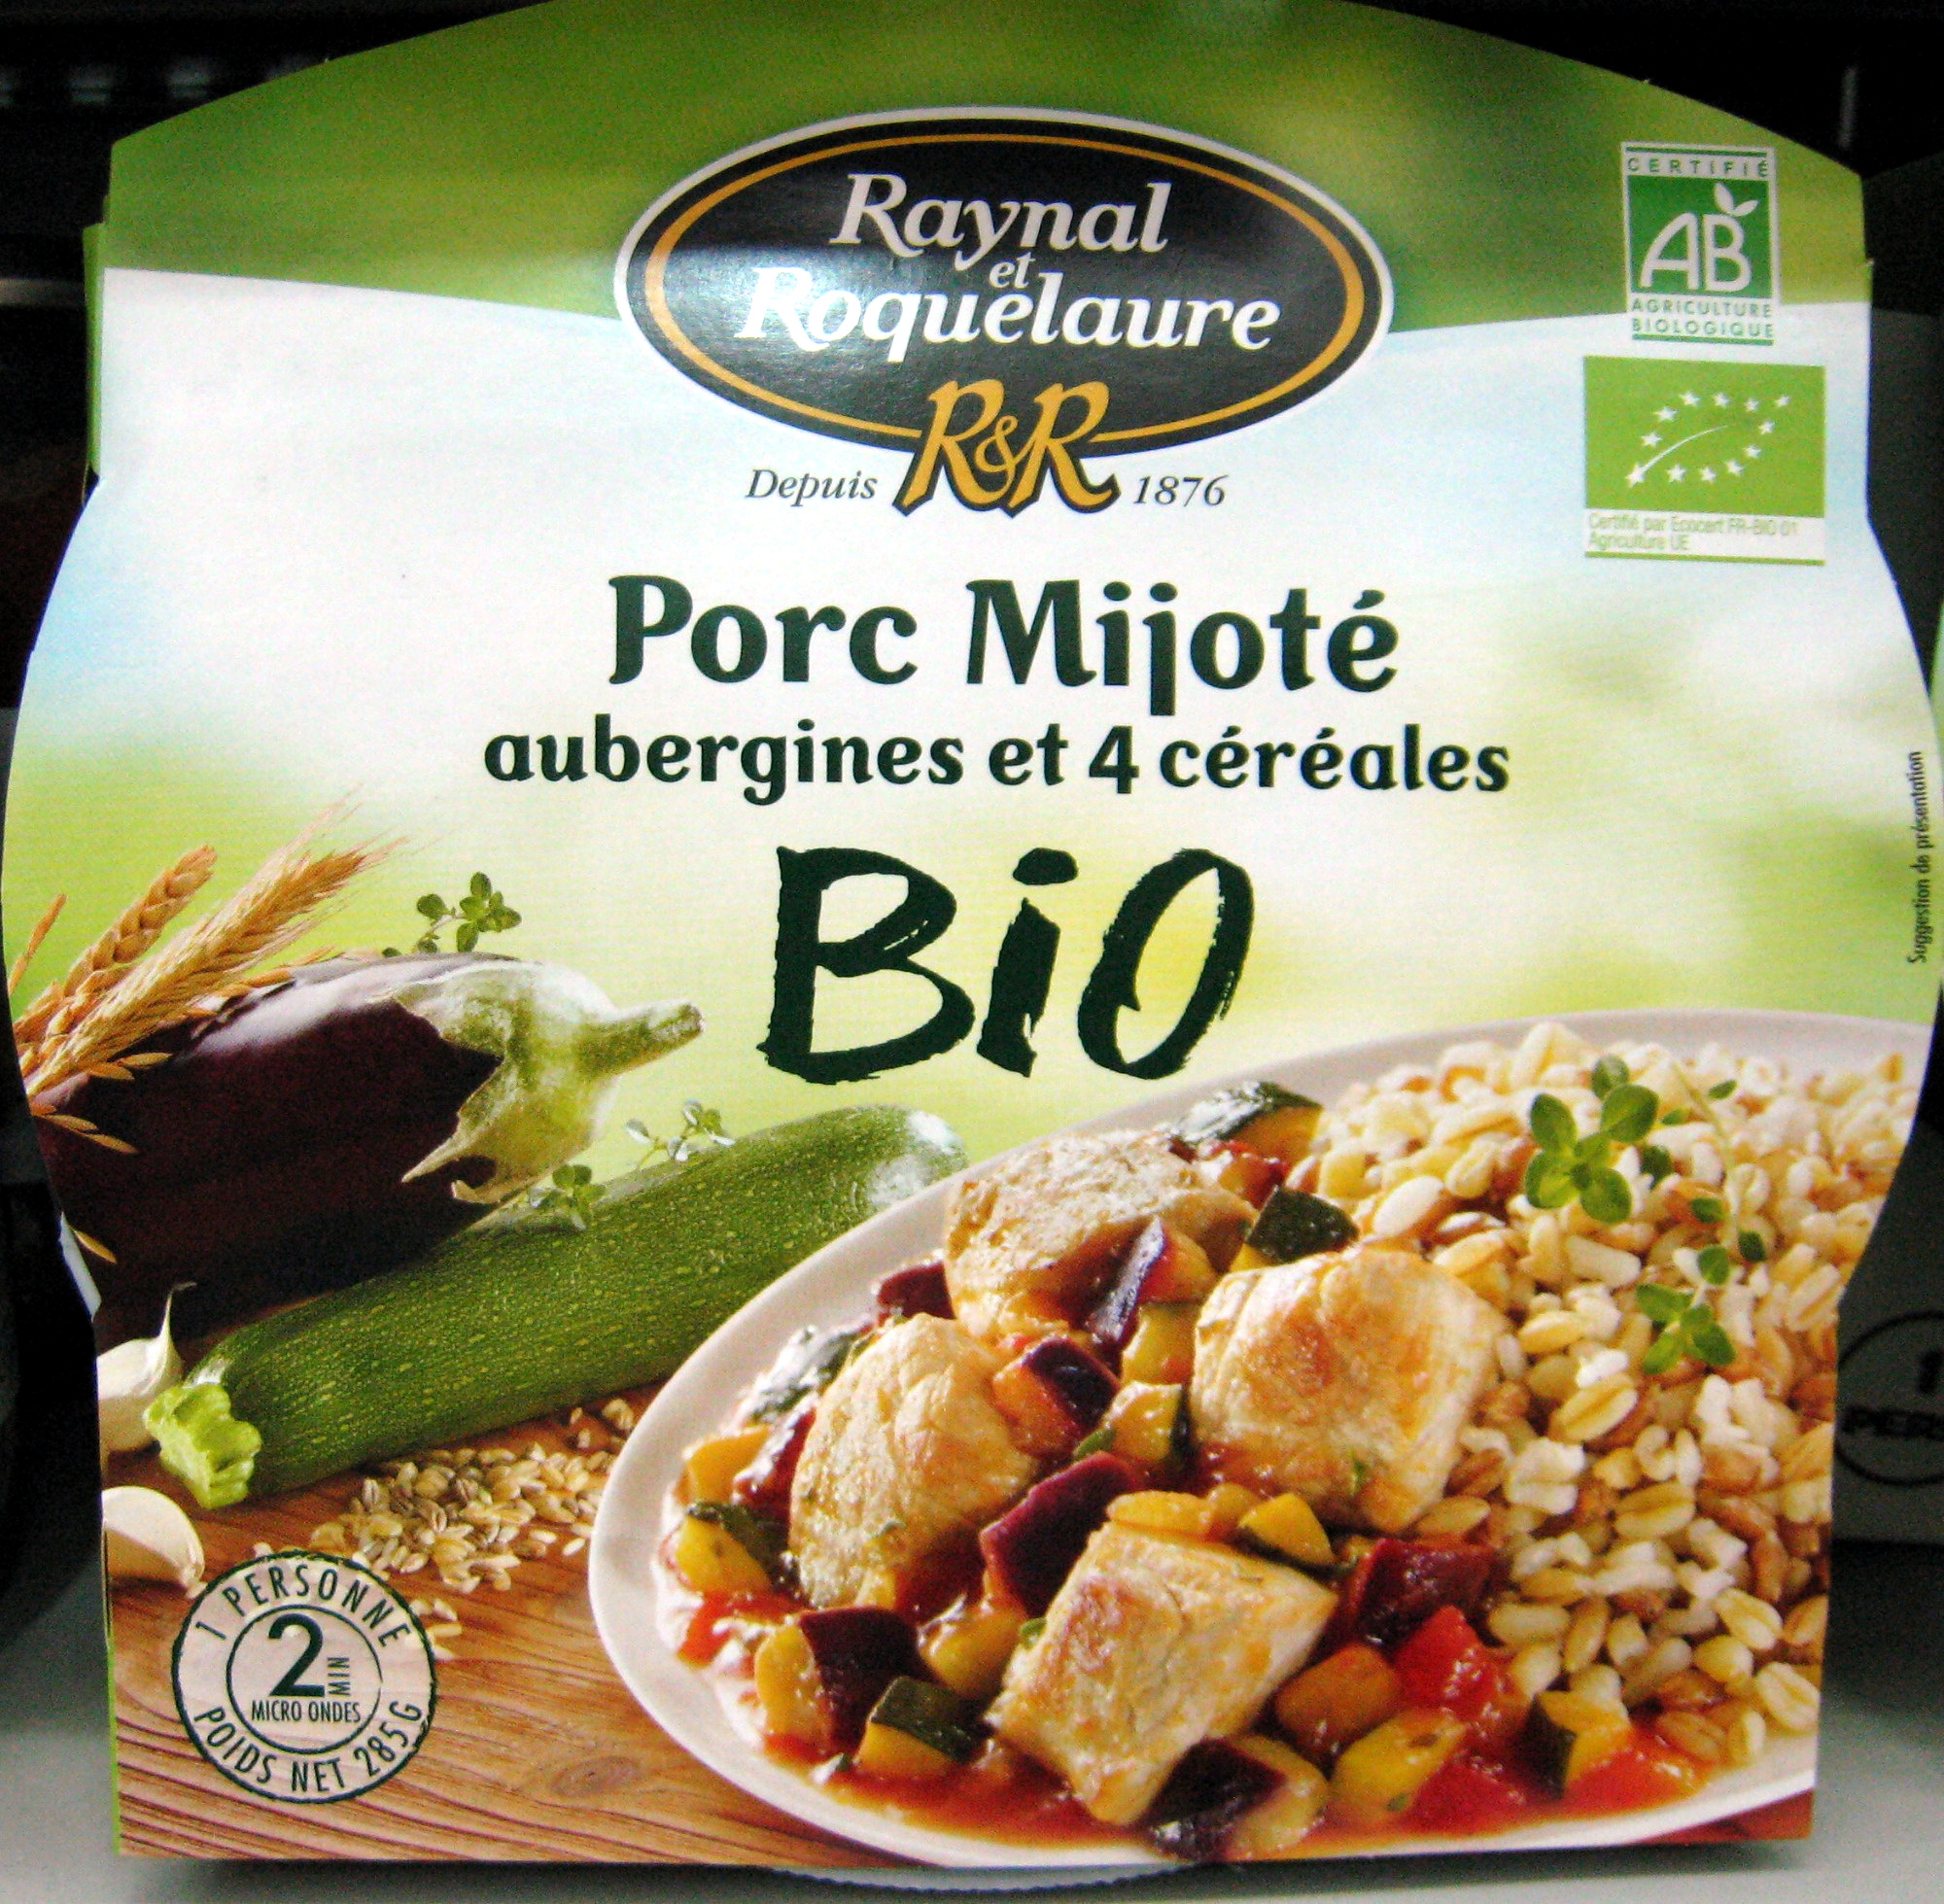 Porc Mijoté aubergines et 4 céréales BIO - Produit